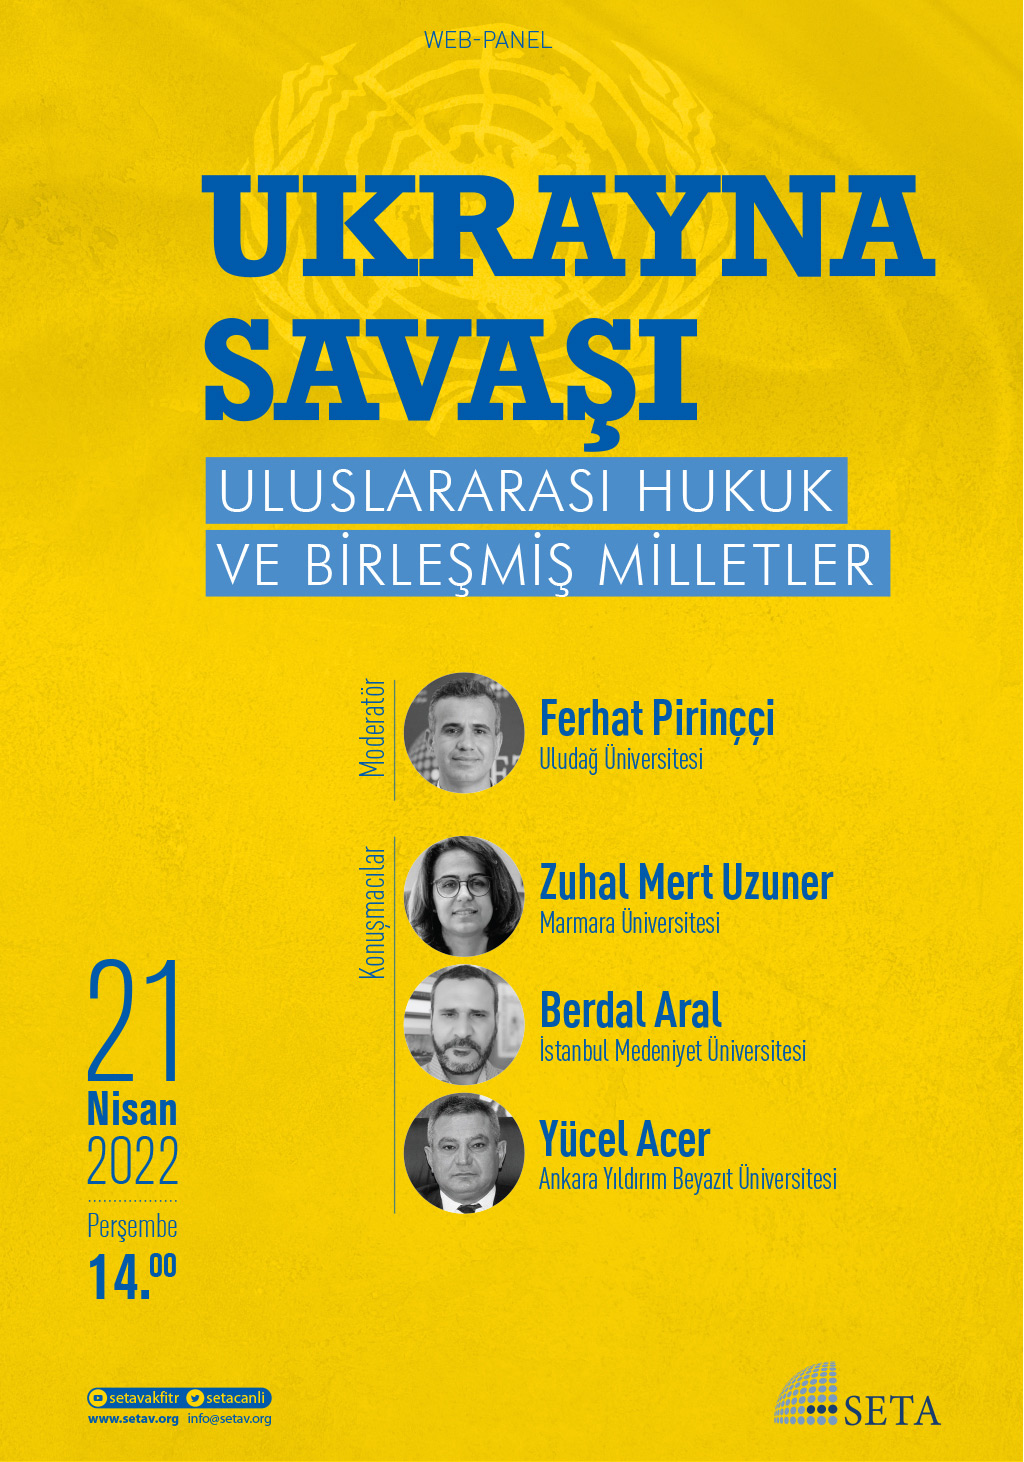 Web Panel: Ukrayna Savaşı | Uluslararası Hukuk ve Birleşmiş Milletler